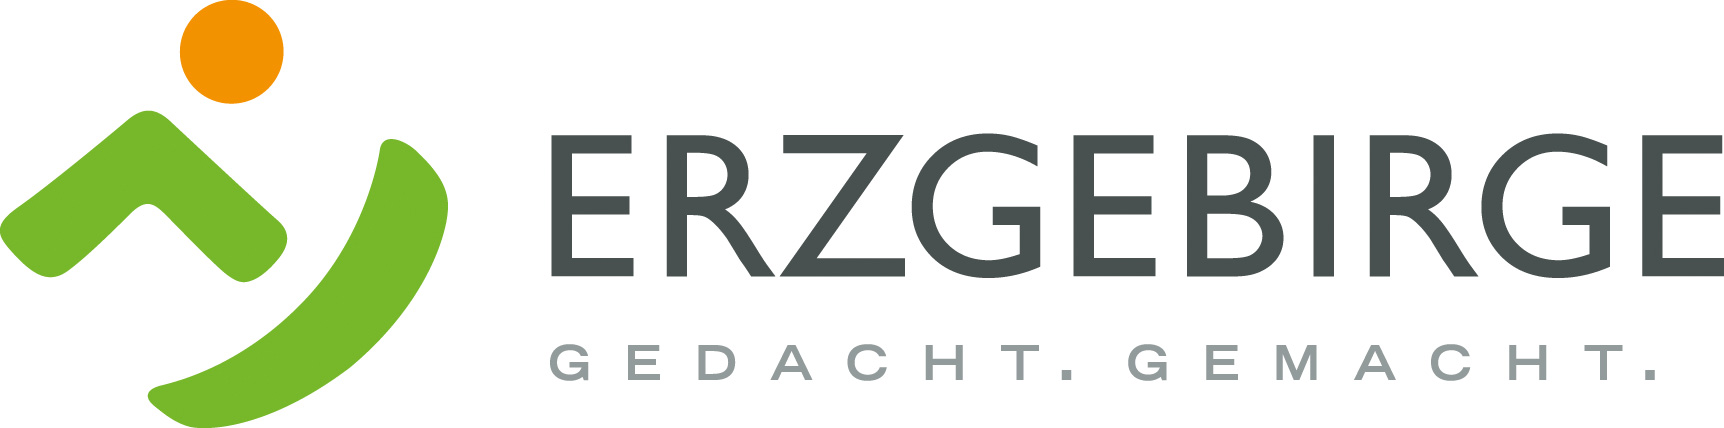 [Translate to German (Austria) (de_AT):] Erzgebirge. Gedacht. Gemacht. Logo